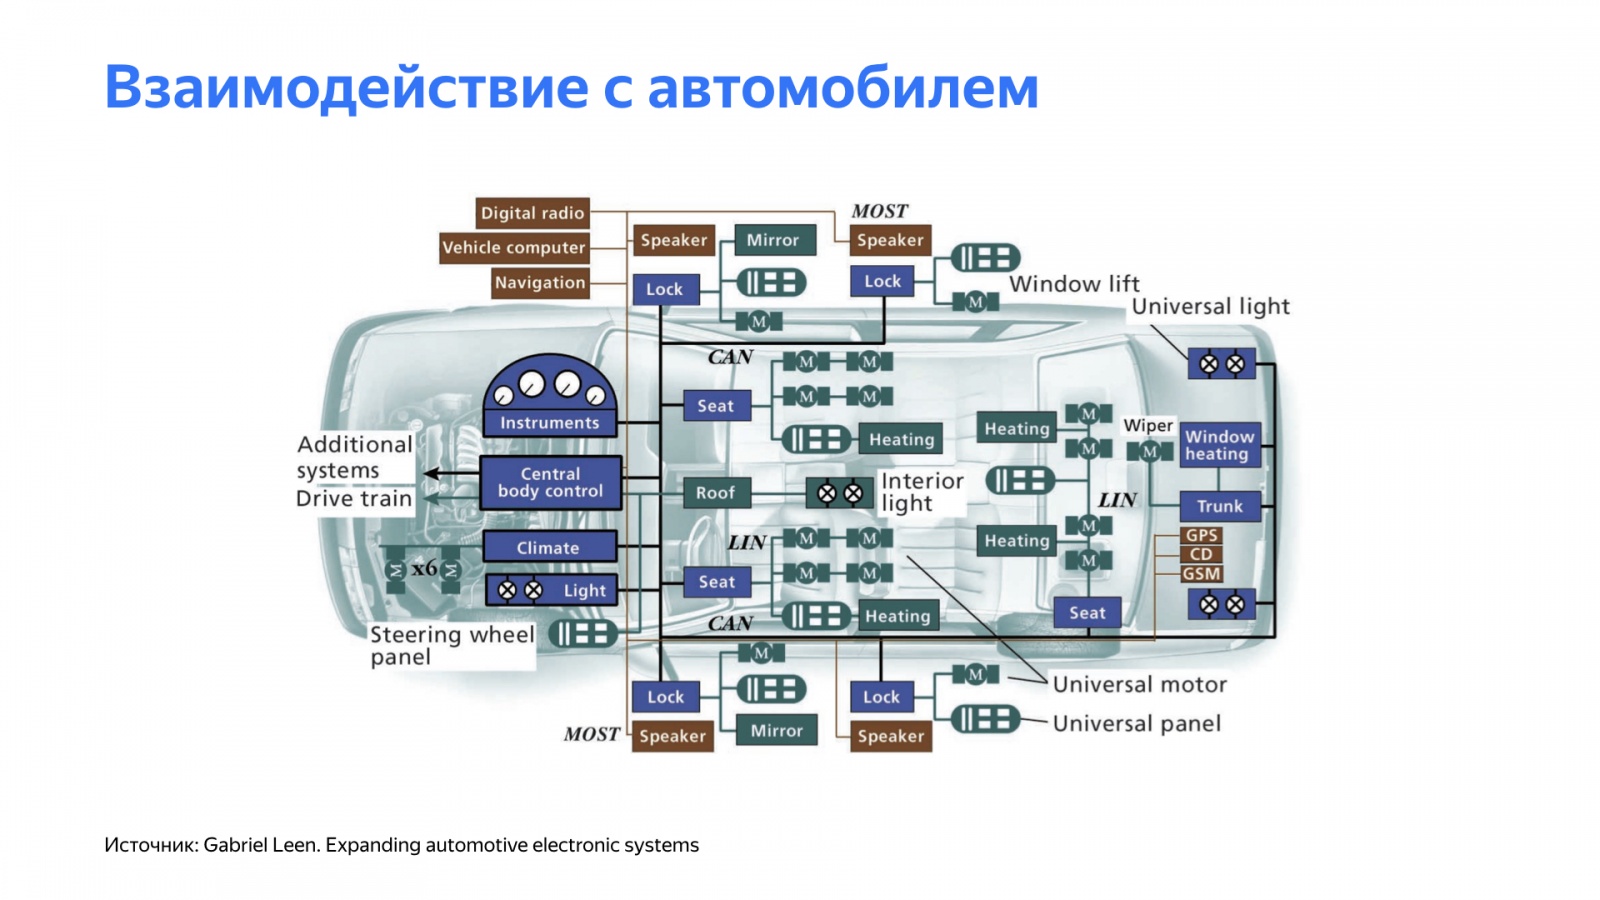 Беспилотный автомобиль: оживляем алгоритмы. Доклад Яндекса - 4